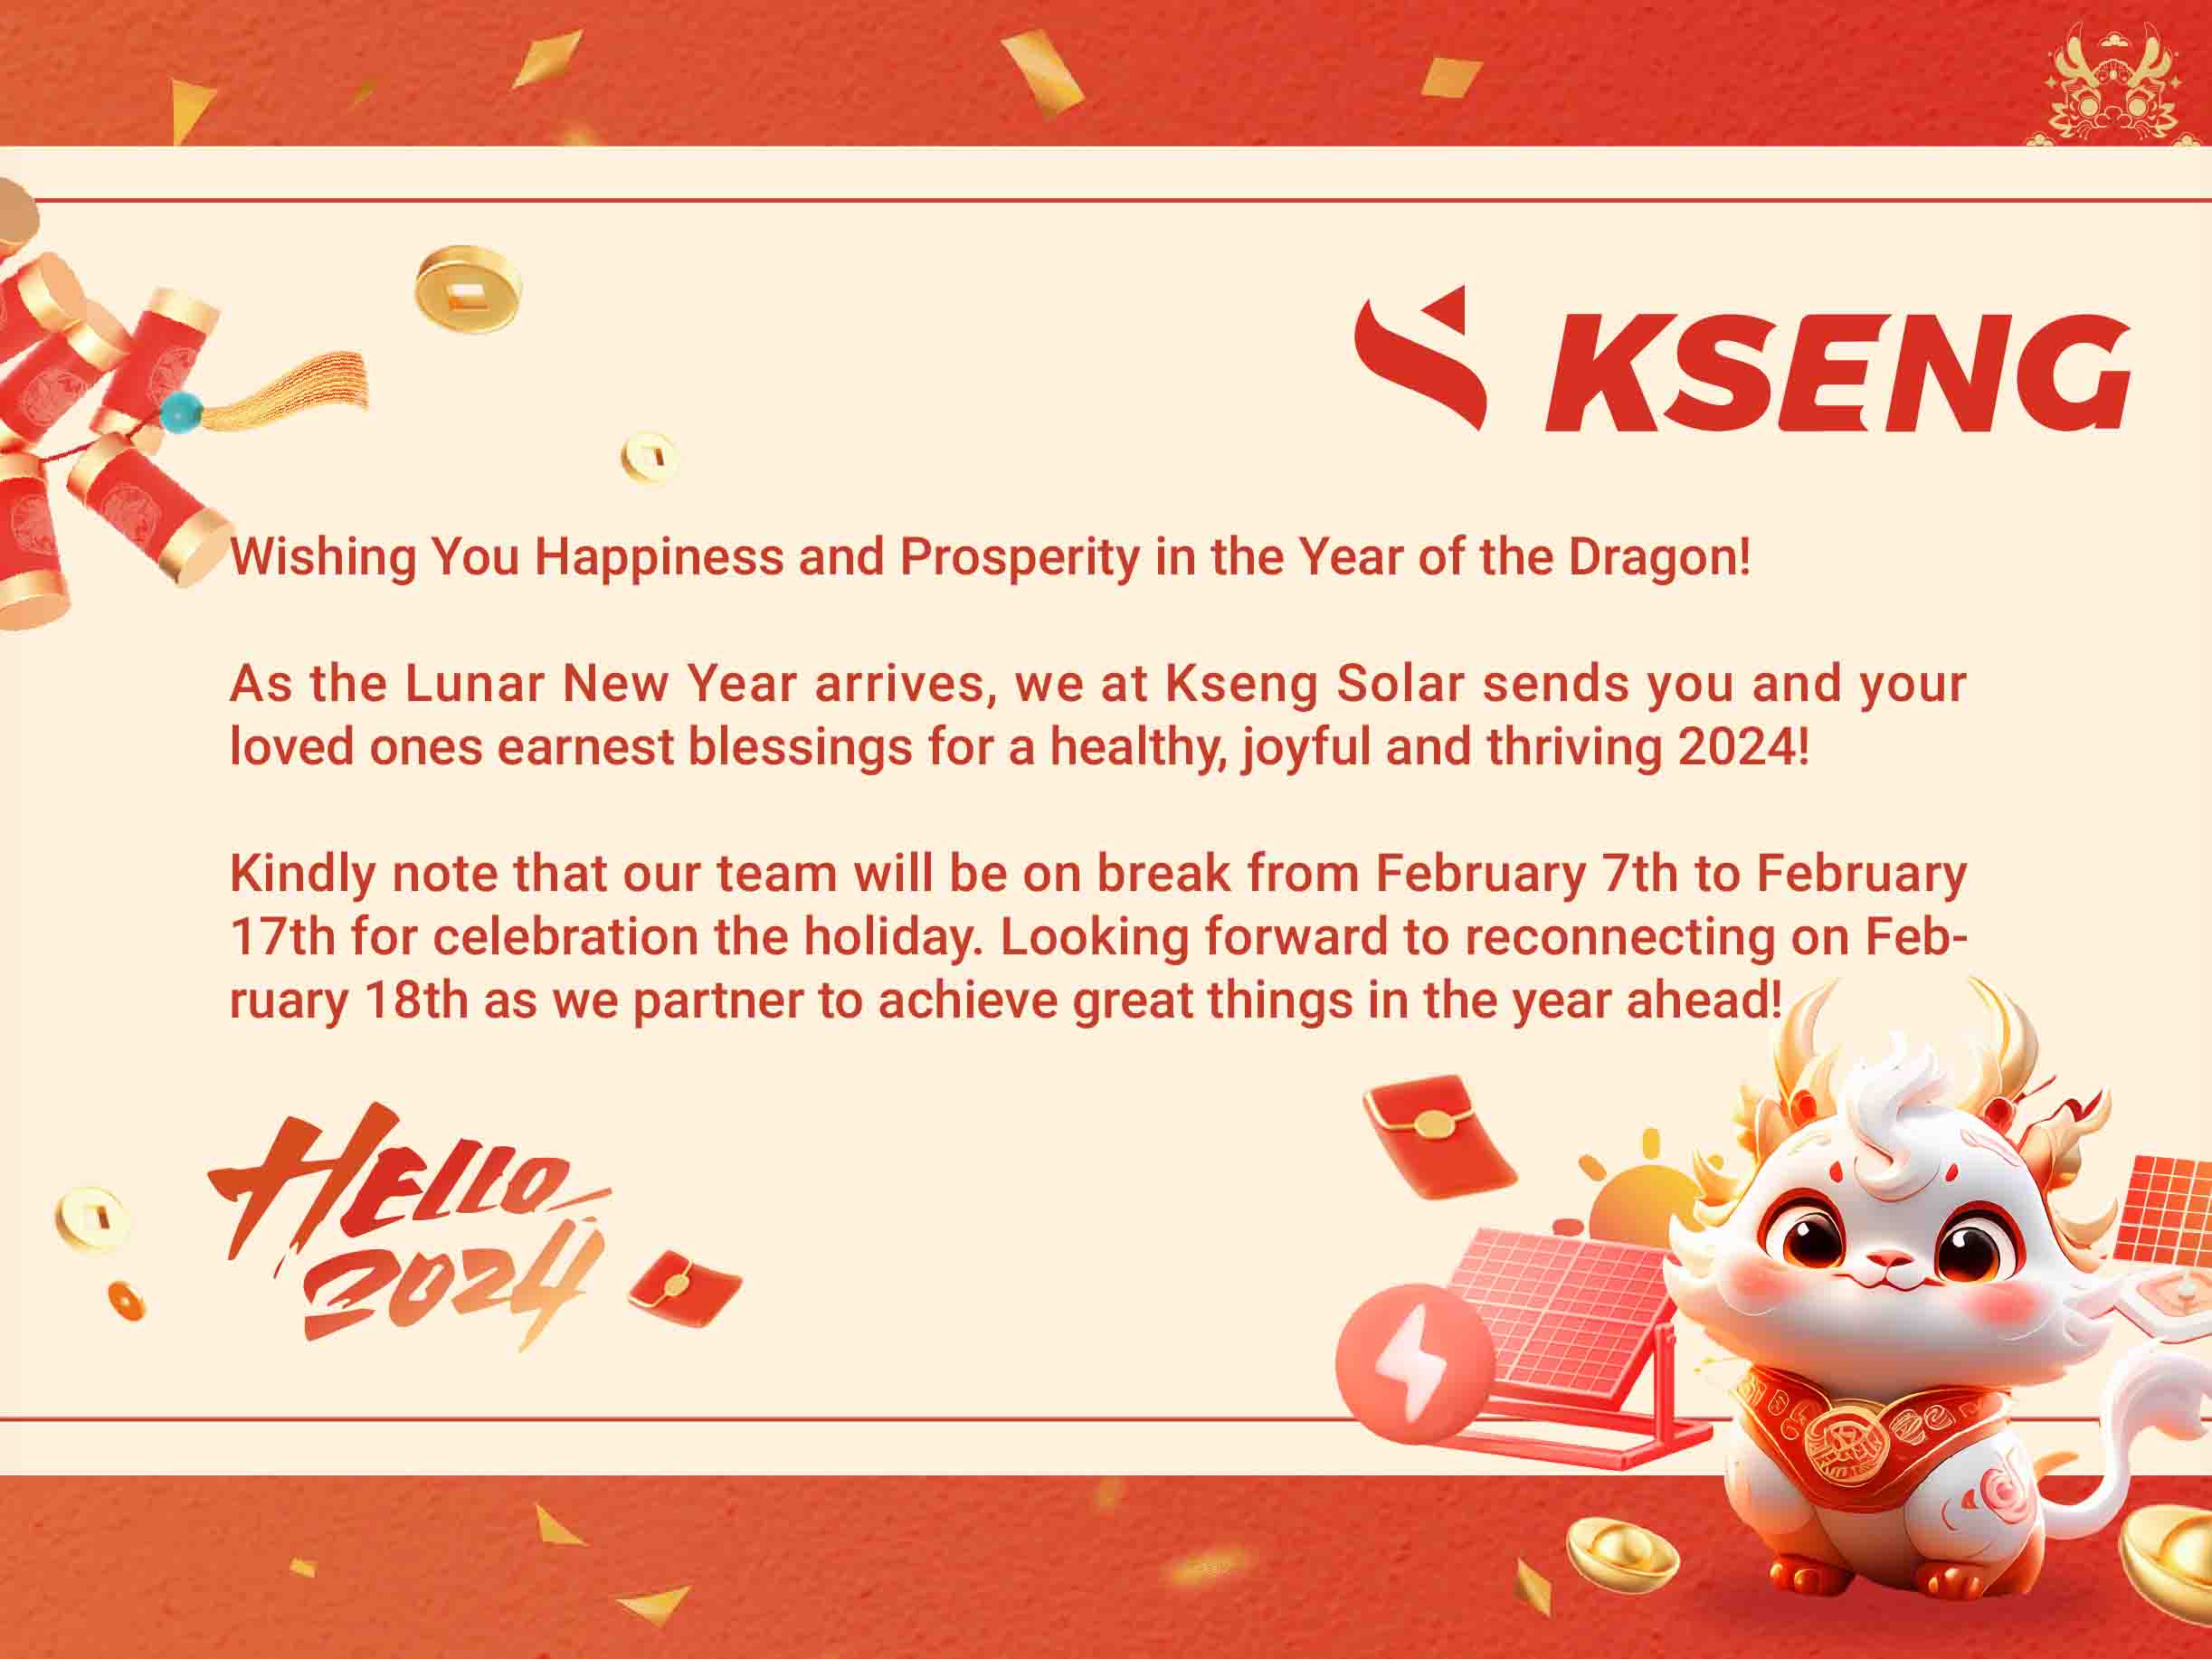 Bekanntmachung über die Feiertage zum chinesischen Neujahr
        